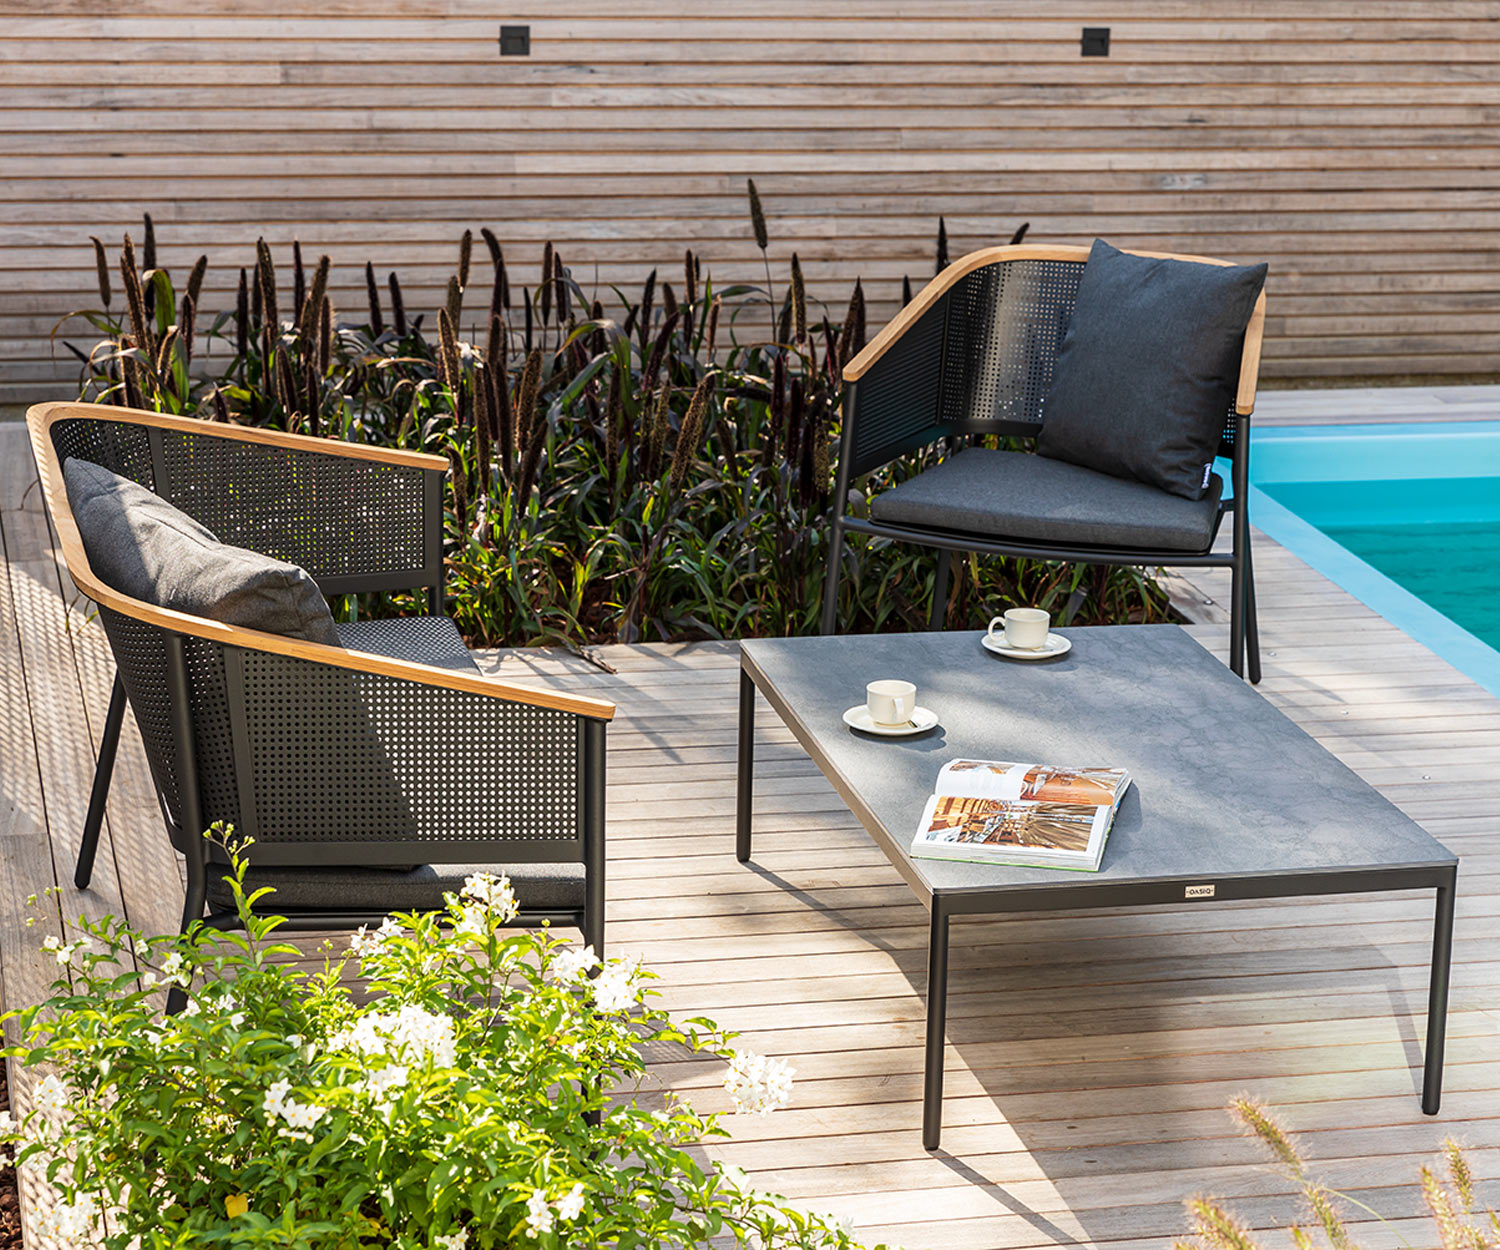 Hoge kwaliteit Oasiq Riad fauteuil voor in de tuin met bijzettafel bij het zwembad